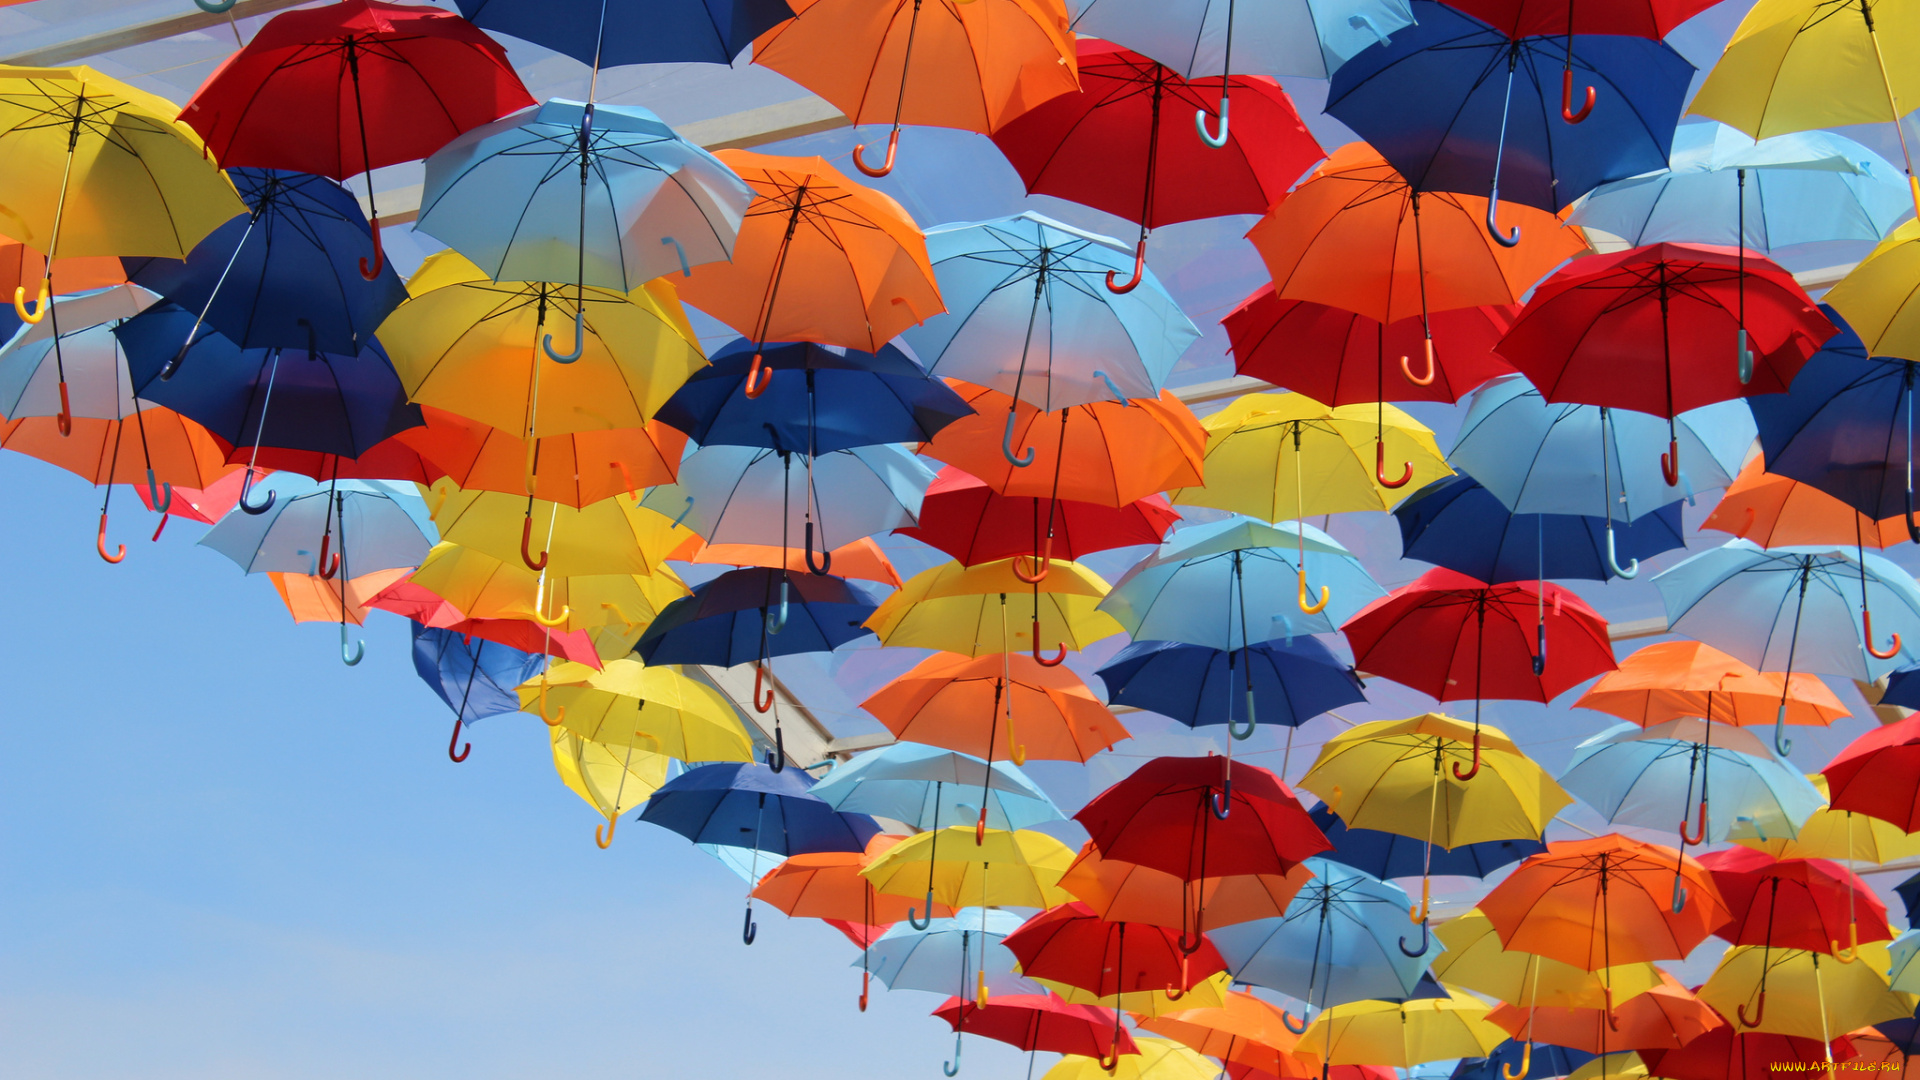 разное, сумки, кошельки, зонты, яркие, разноцветные, зонтики, небо